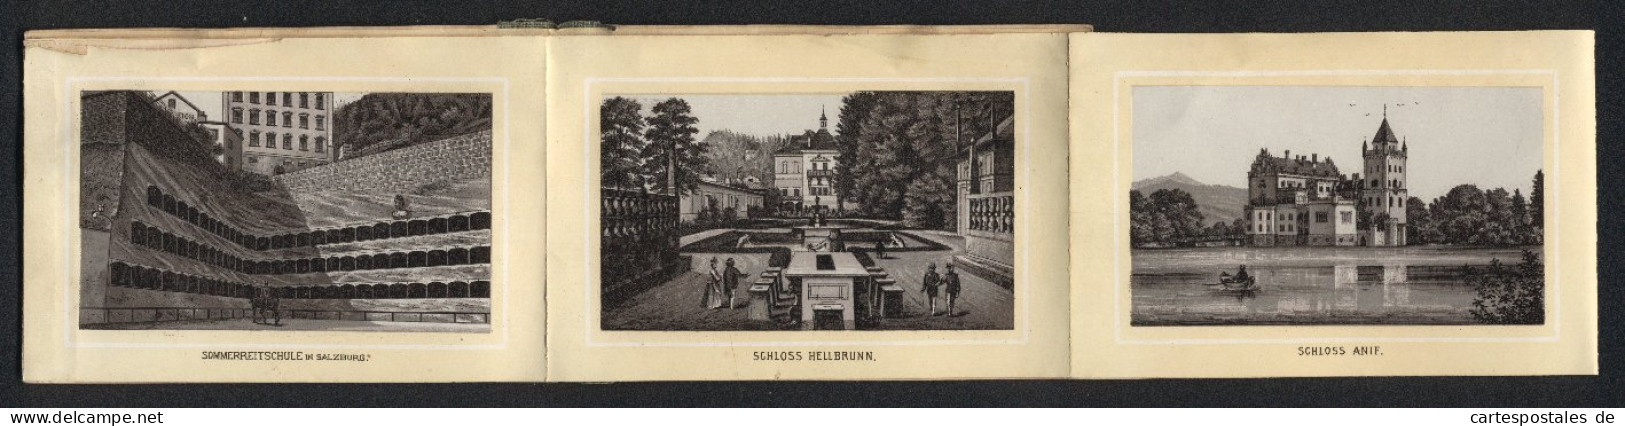 Leporello-Album Salzburg Mit 12 Lithographie-Ansichten, Berchtesgaden, Schloss Anif, Sommerreitschule, Mozartplatz  - Litografía